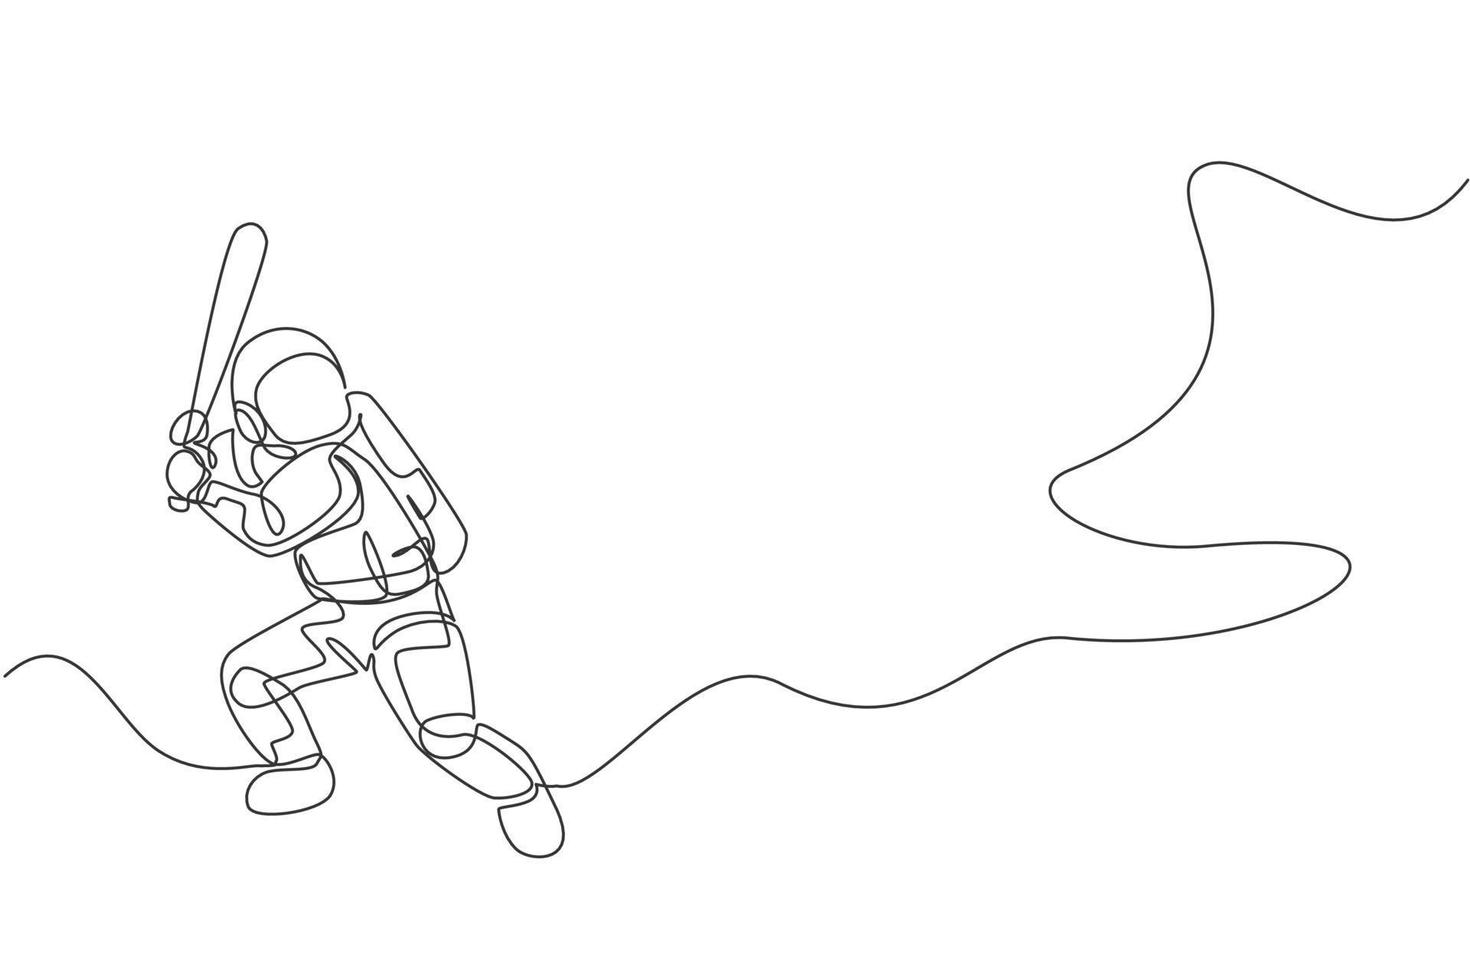 um desenho de linha contínua de astronauta jogando beisebol na galáxia do espaço profundo. conceito de esporte de aptidão saudável de astronauta. ilustração vetorial de design gráfico de desenho de linha única dinâmica vetor